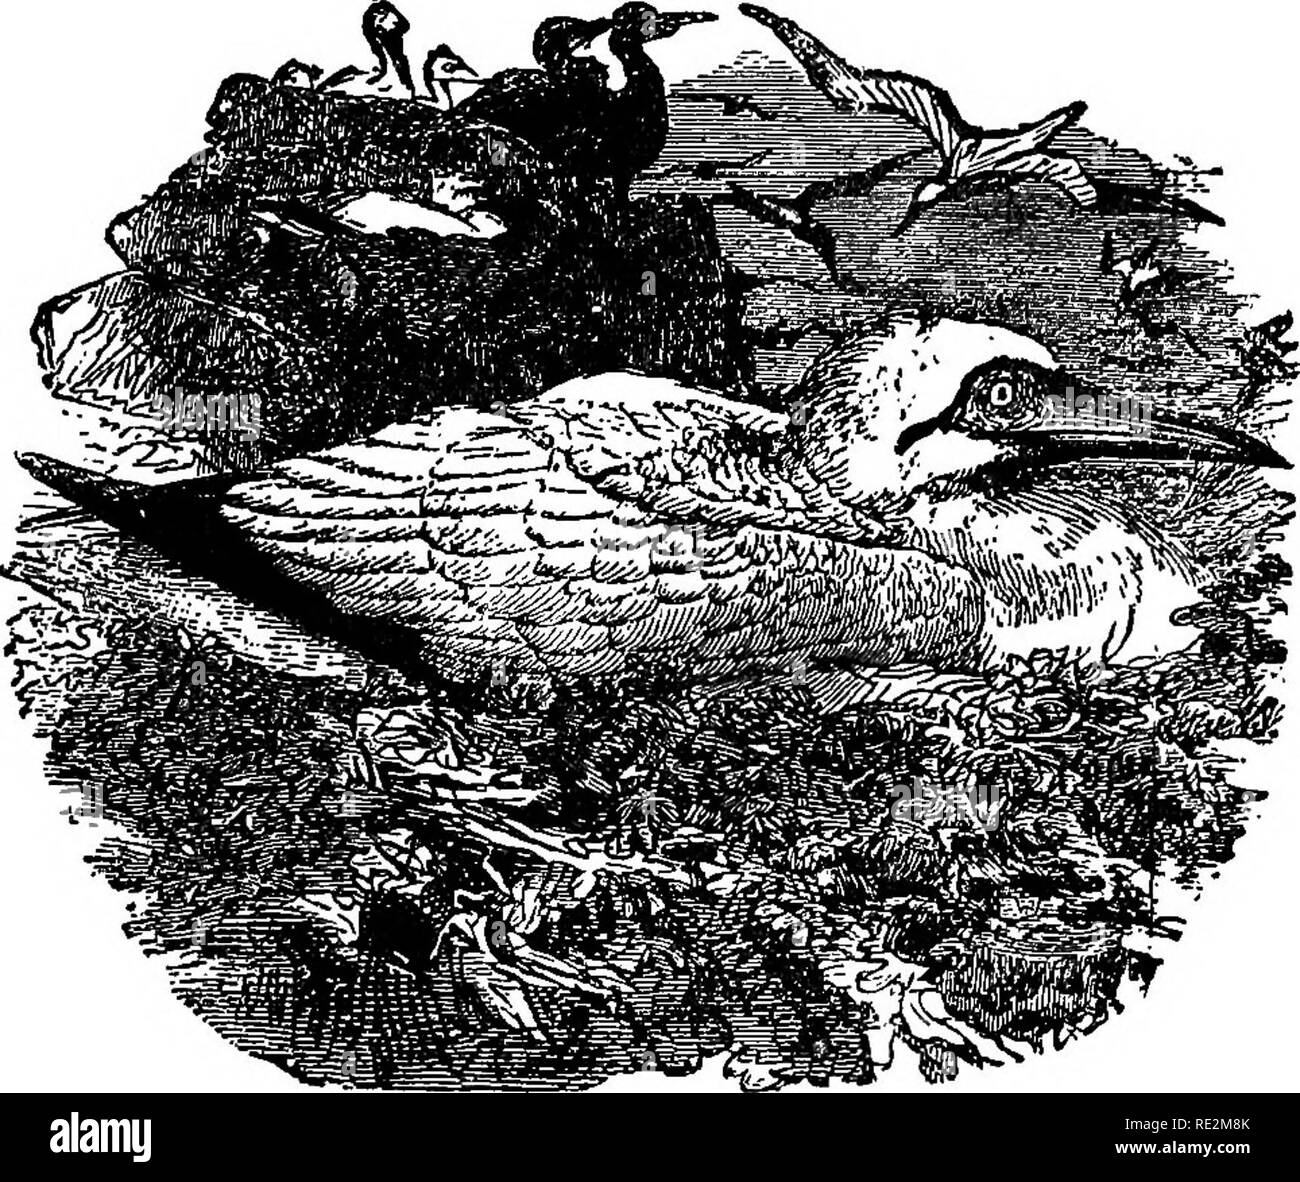 . Nester und Eier der nordamerikanische Vögel. Vögel, Vögel. NORTH AMERICAN BIRDa. 63. 117. Basstölpel und Nester. Der weiße Schwan, oder Solan Gans, wird im gesamten Norden verteilt - ern Atlantischen Ozean, und ist mehr oder weniger ein Bewohner wo gefunden. Einige der wichtigsten Brutplätze dieses Vogels sind auf den Inseln über die Küsten der Scot-land, nbtably der großen Bass Rock an der Mündung des Firth von weiter. Hier brütet in Zehntausende, mit den Möwen, Kormorane und PuflSns, der Felsen bewohnen. Andere seiner Zucht Stationen ist St. Kilda. Die steilen Klippen an dieser Stelle Stockfoto